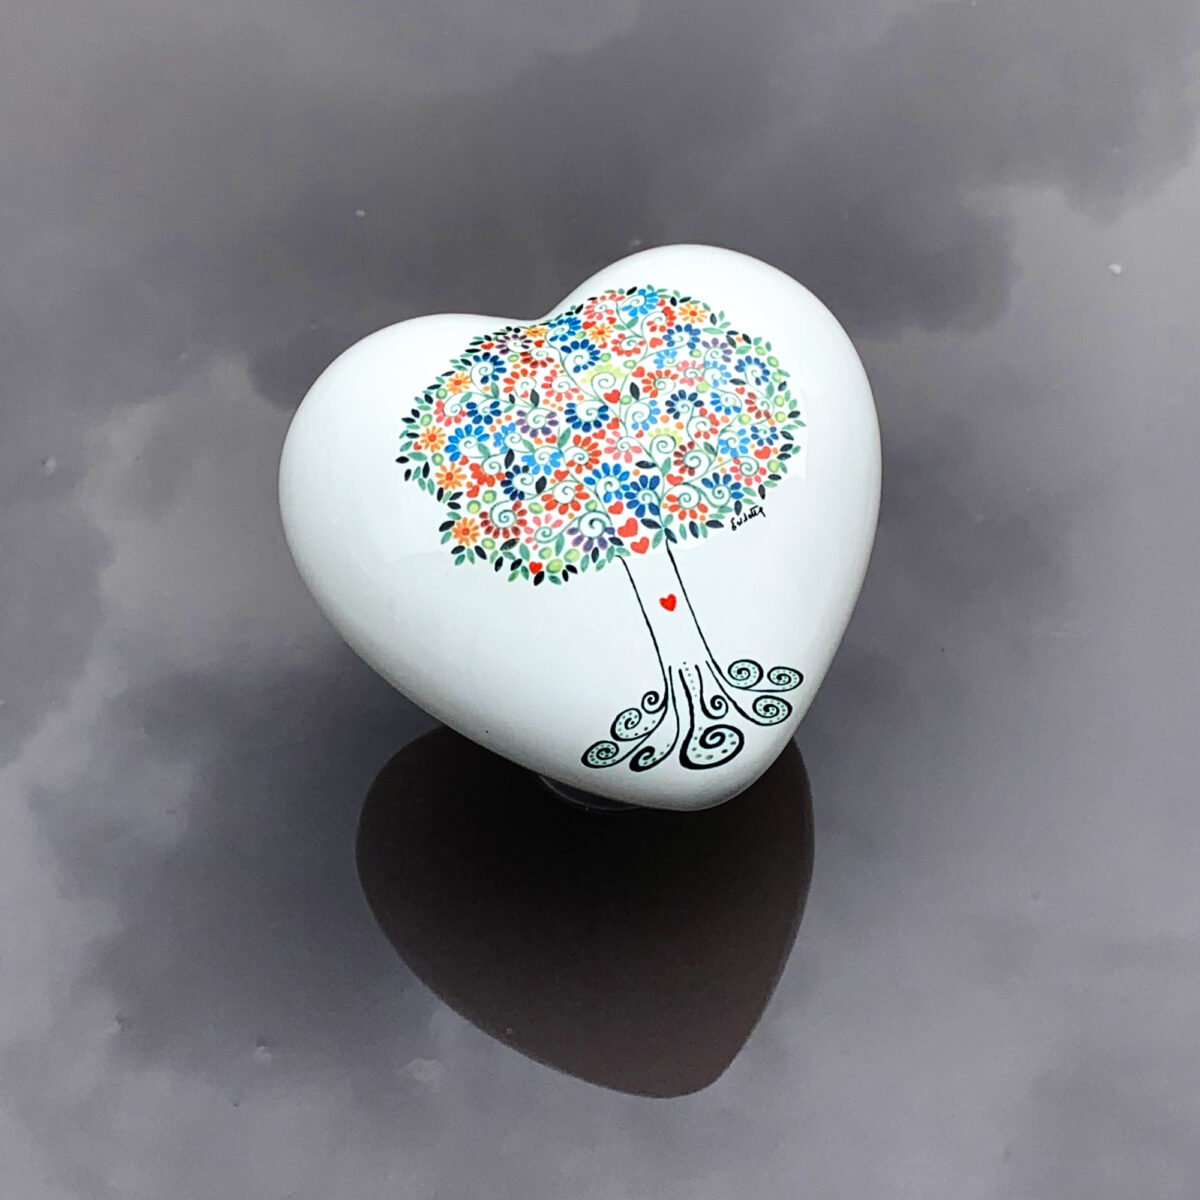 cuore in ceramica decorato con un disegno dell'albero della vita